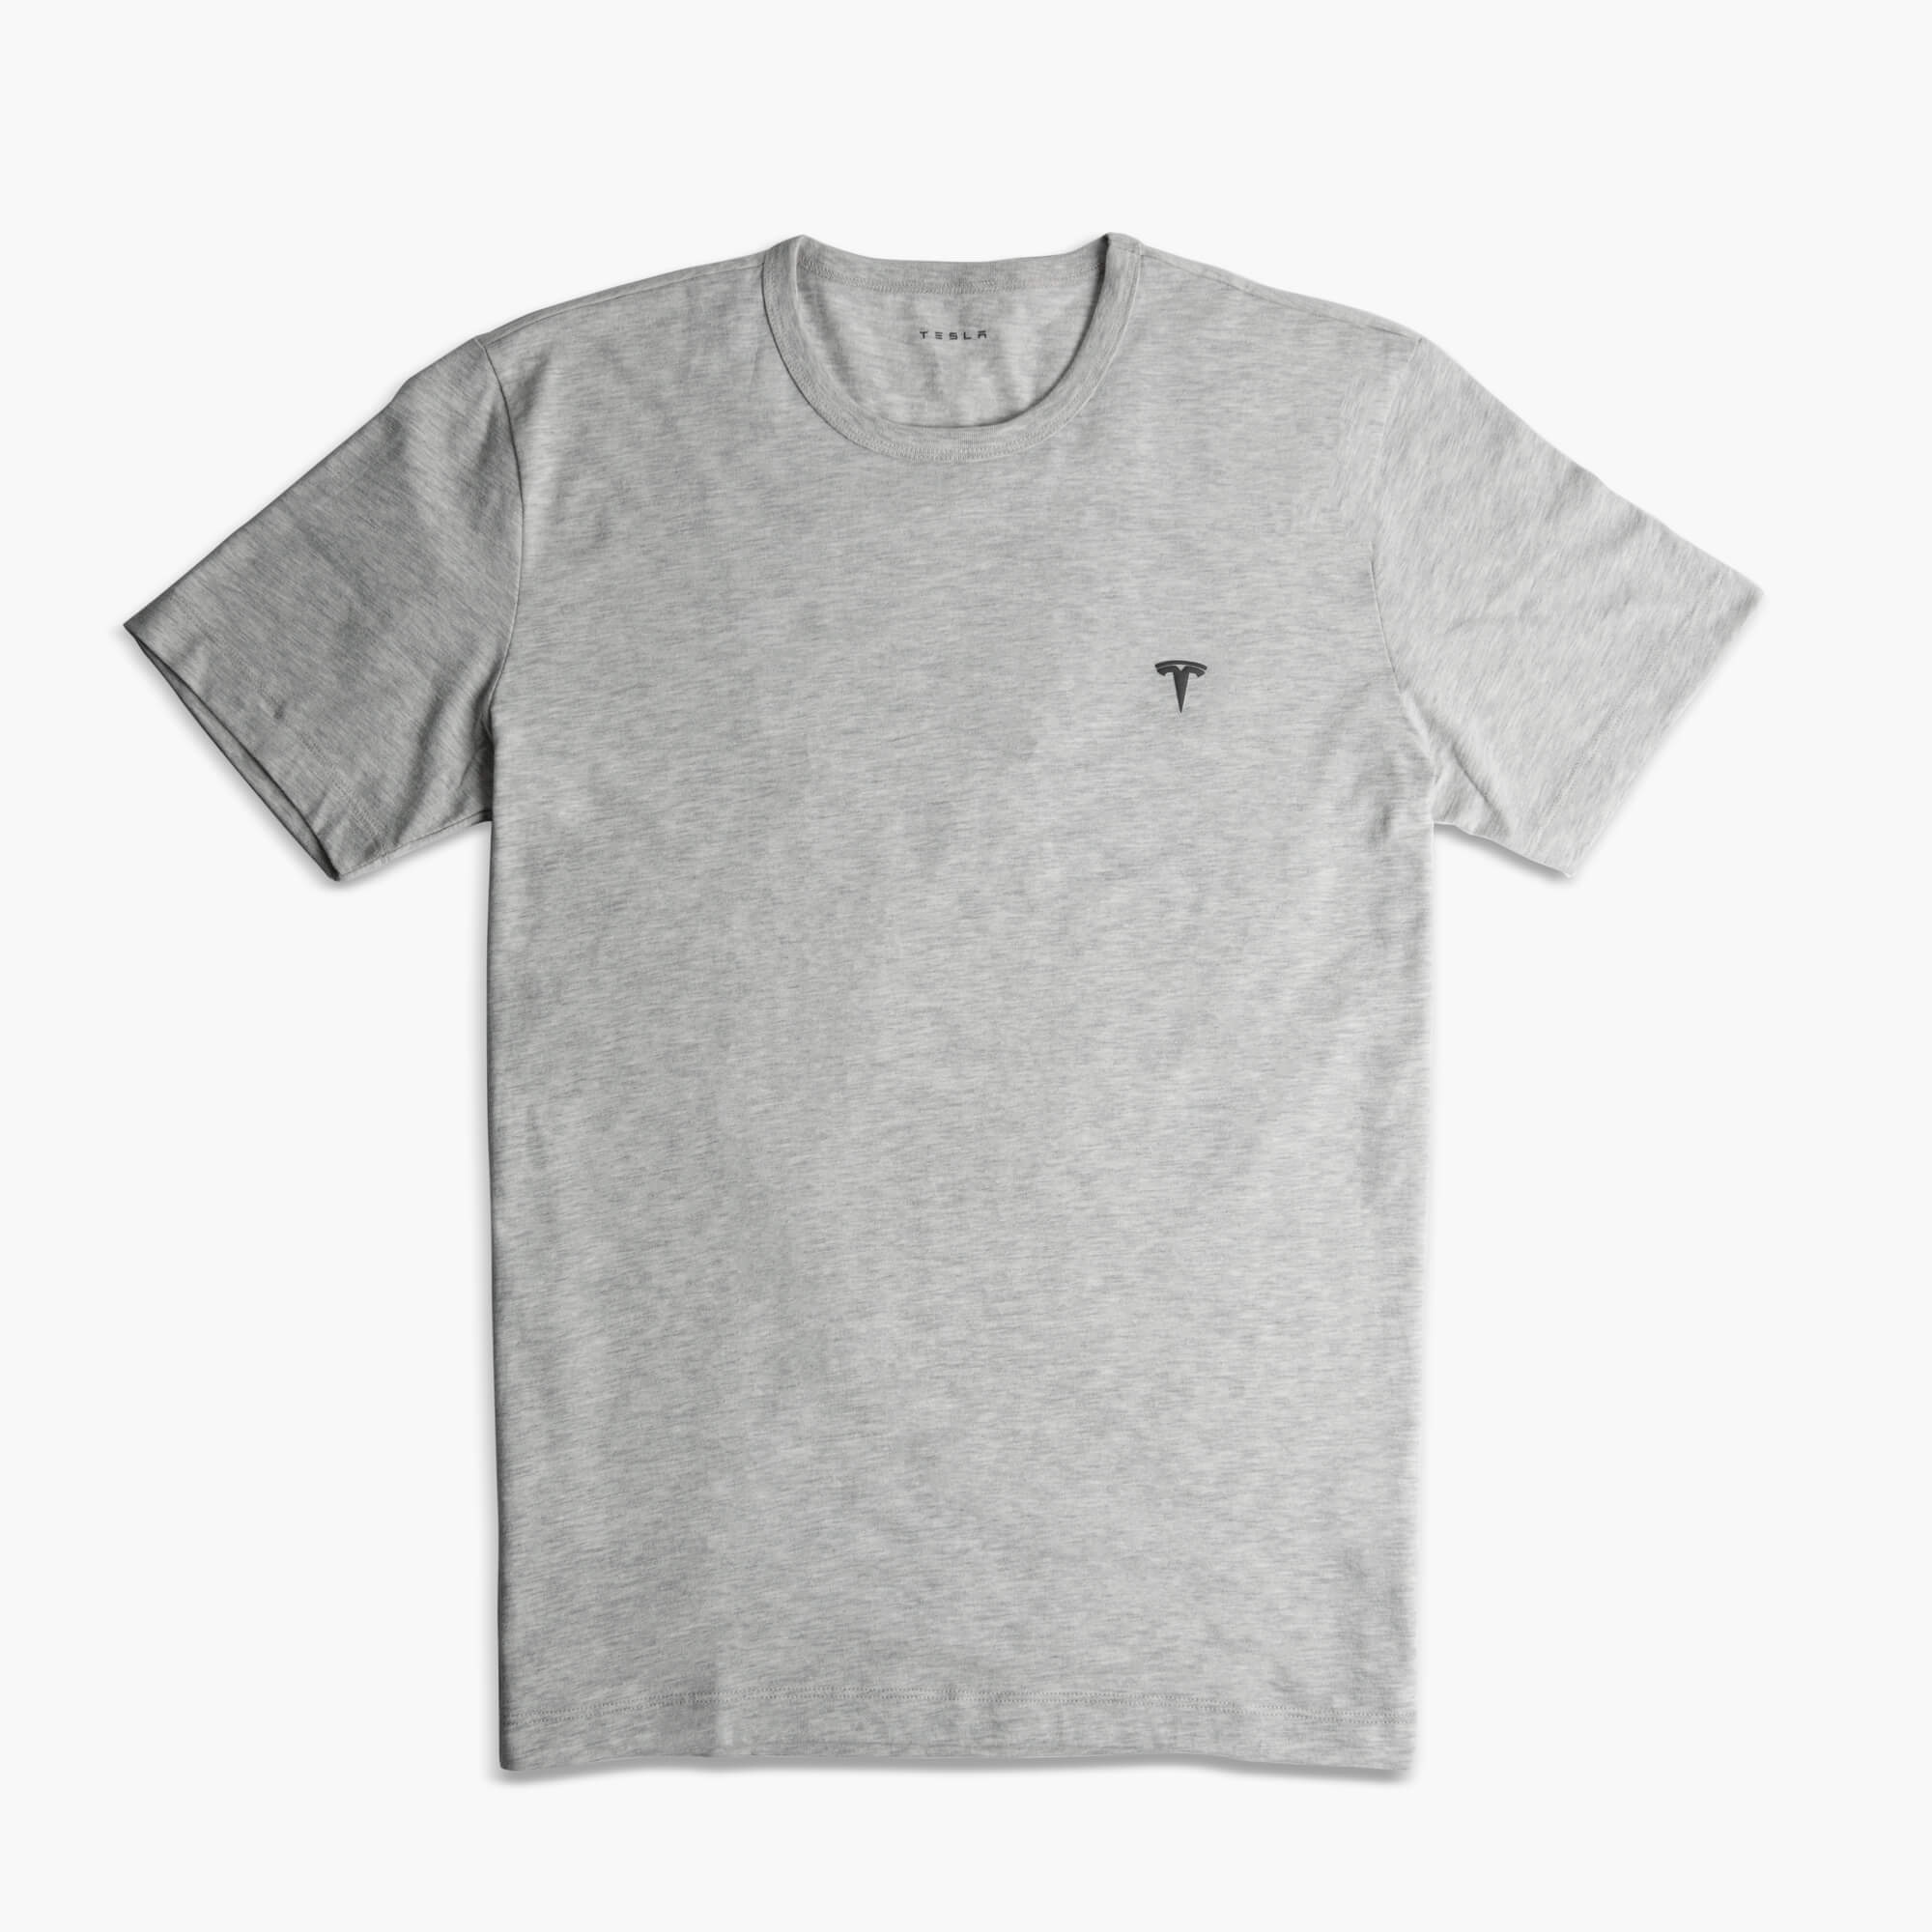 T-shirt avec logo T en relief pour homme